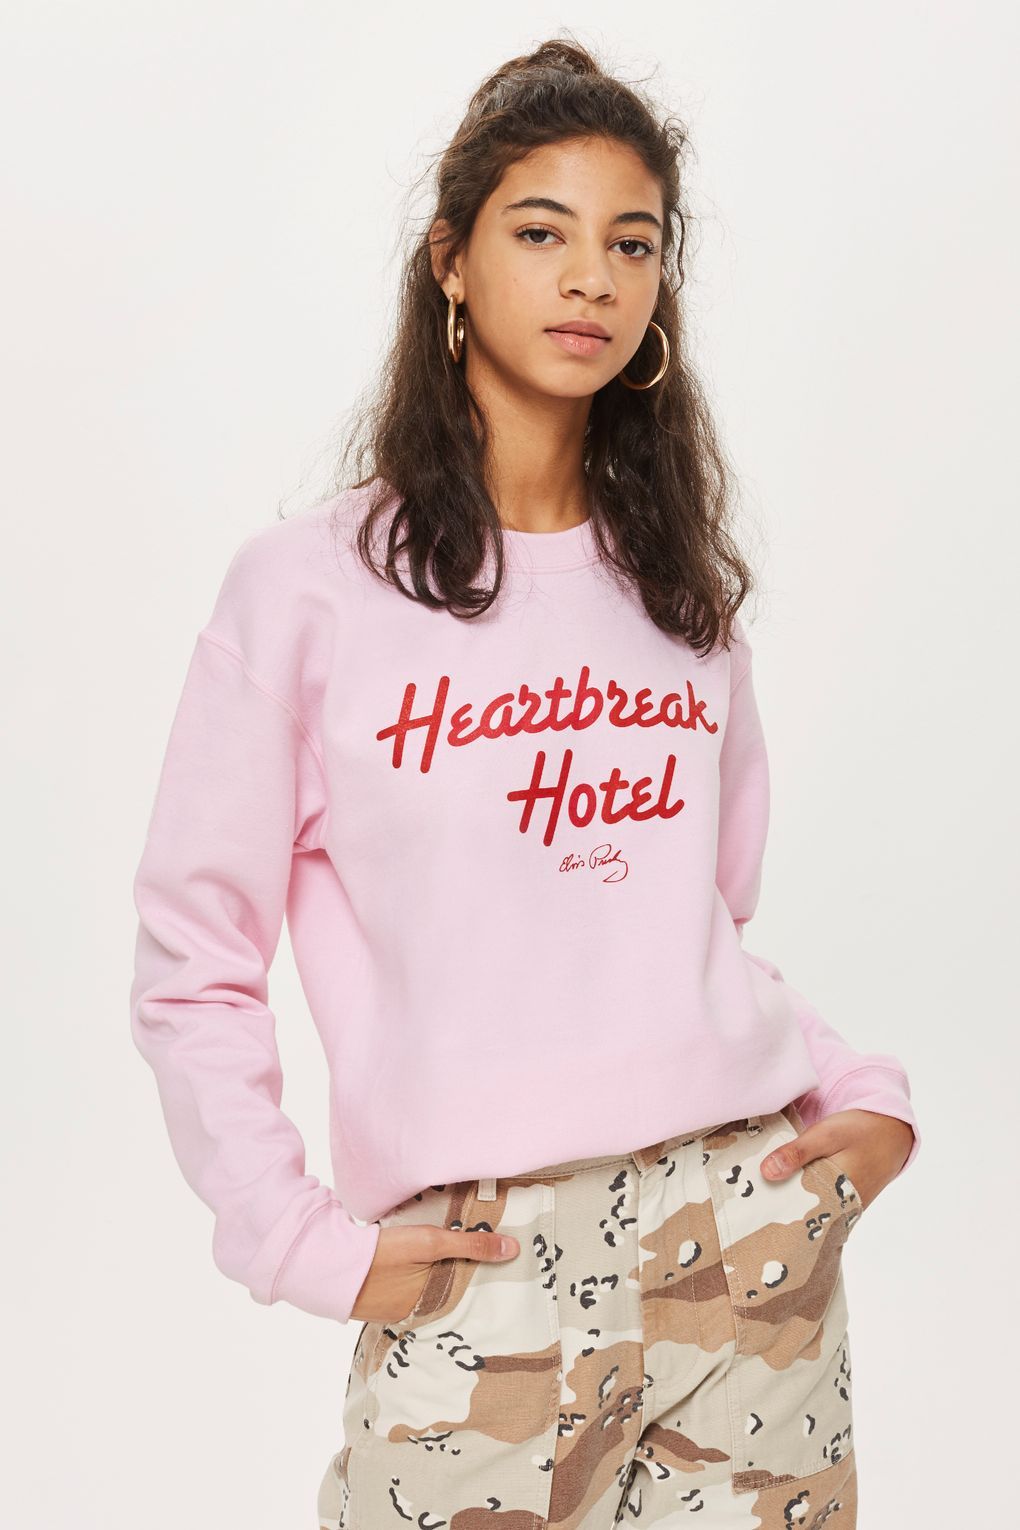 Heartbreak Hotel' Sweatshirt